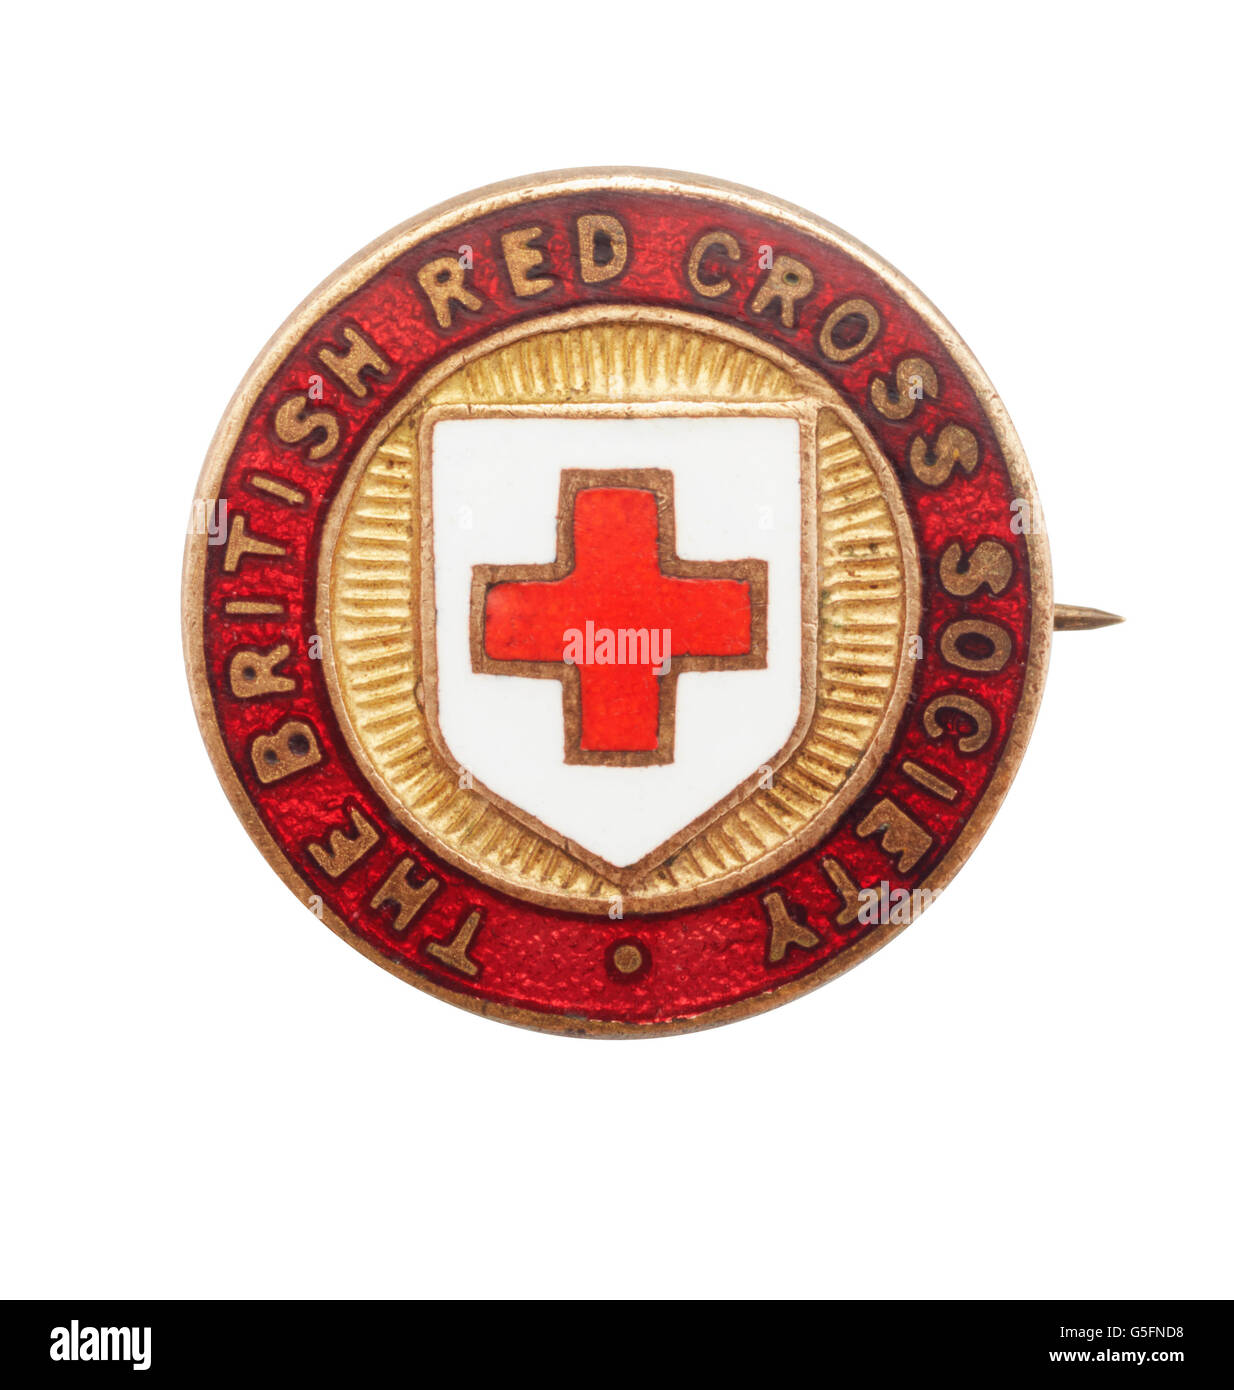 Das British Red Cross Society Kriegszeit Abzeichen Stockfoto